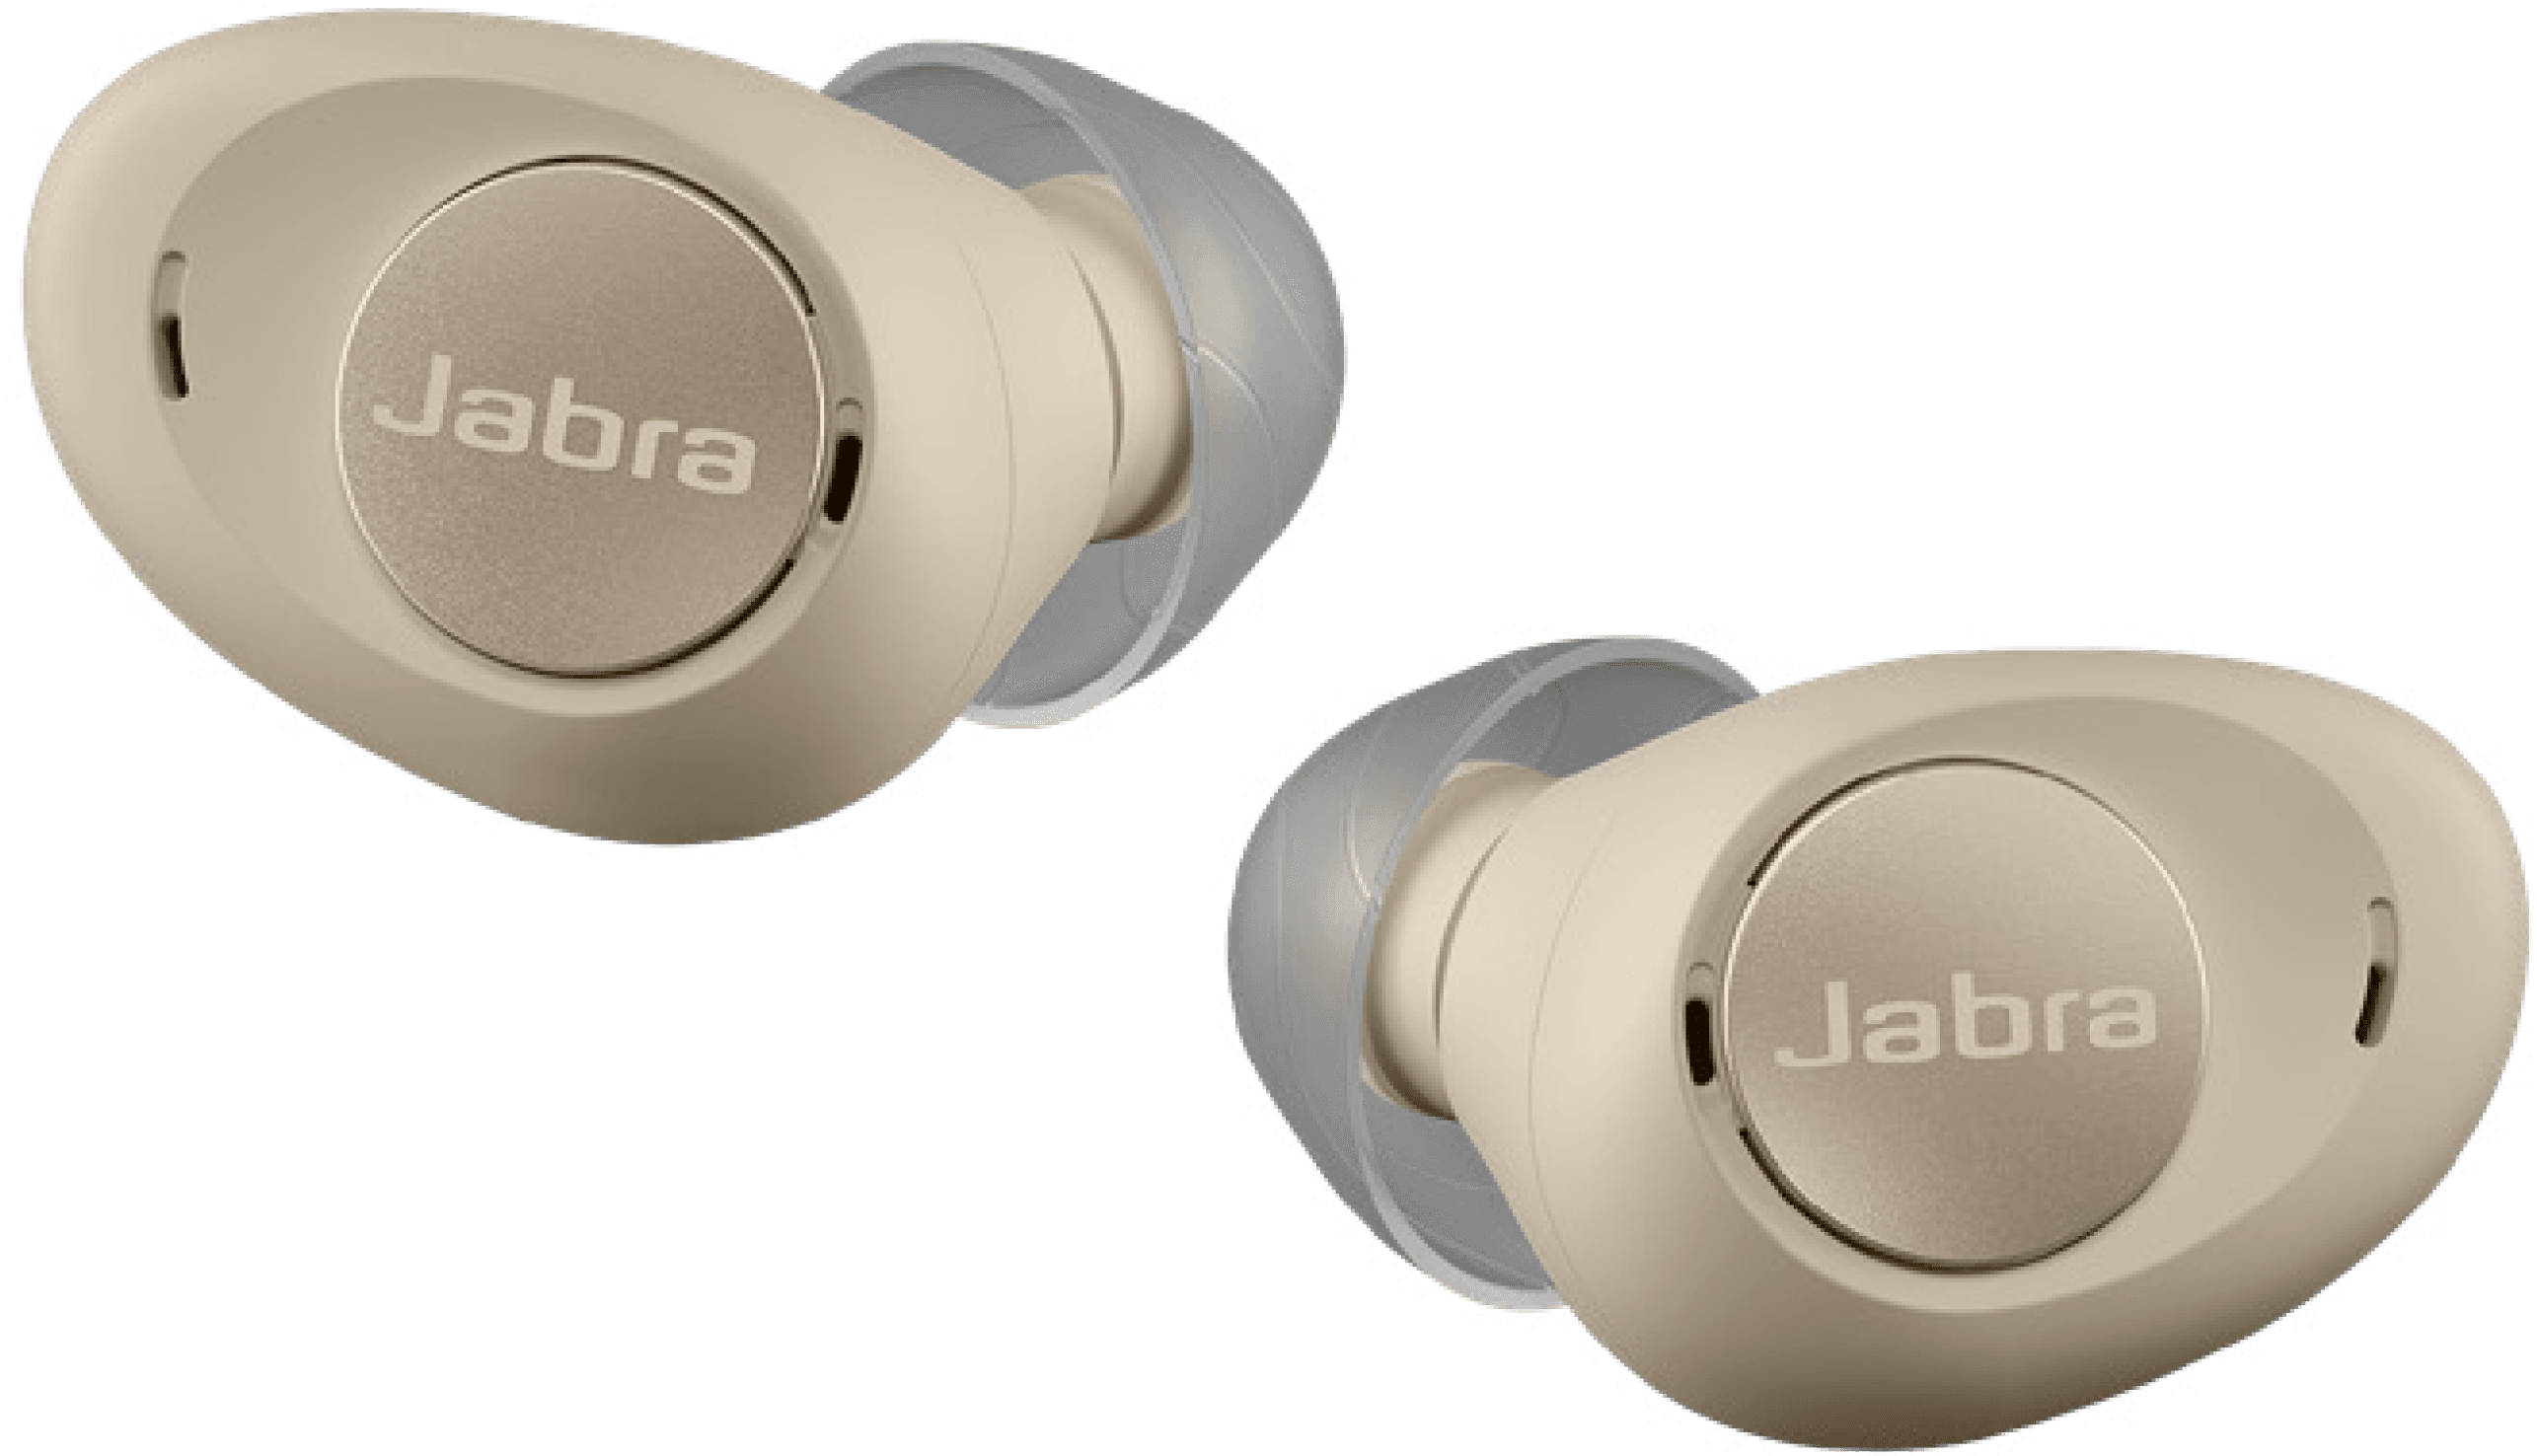 Jabra beige earbuds